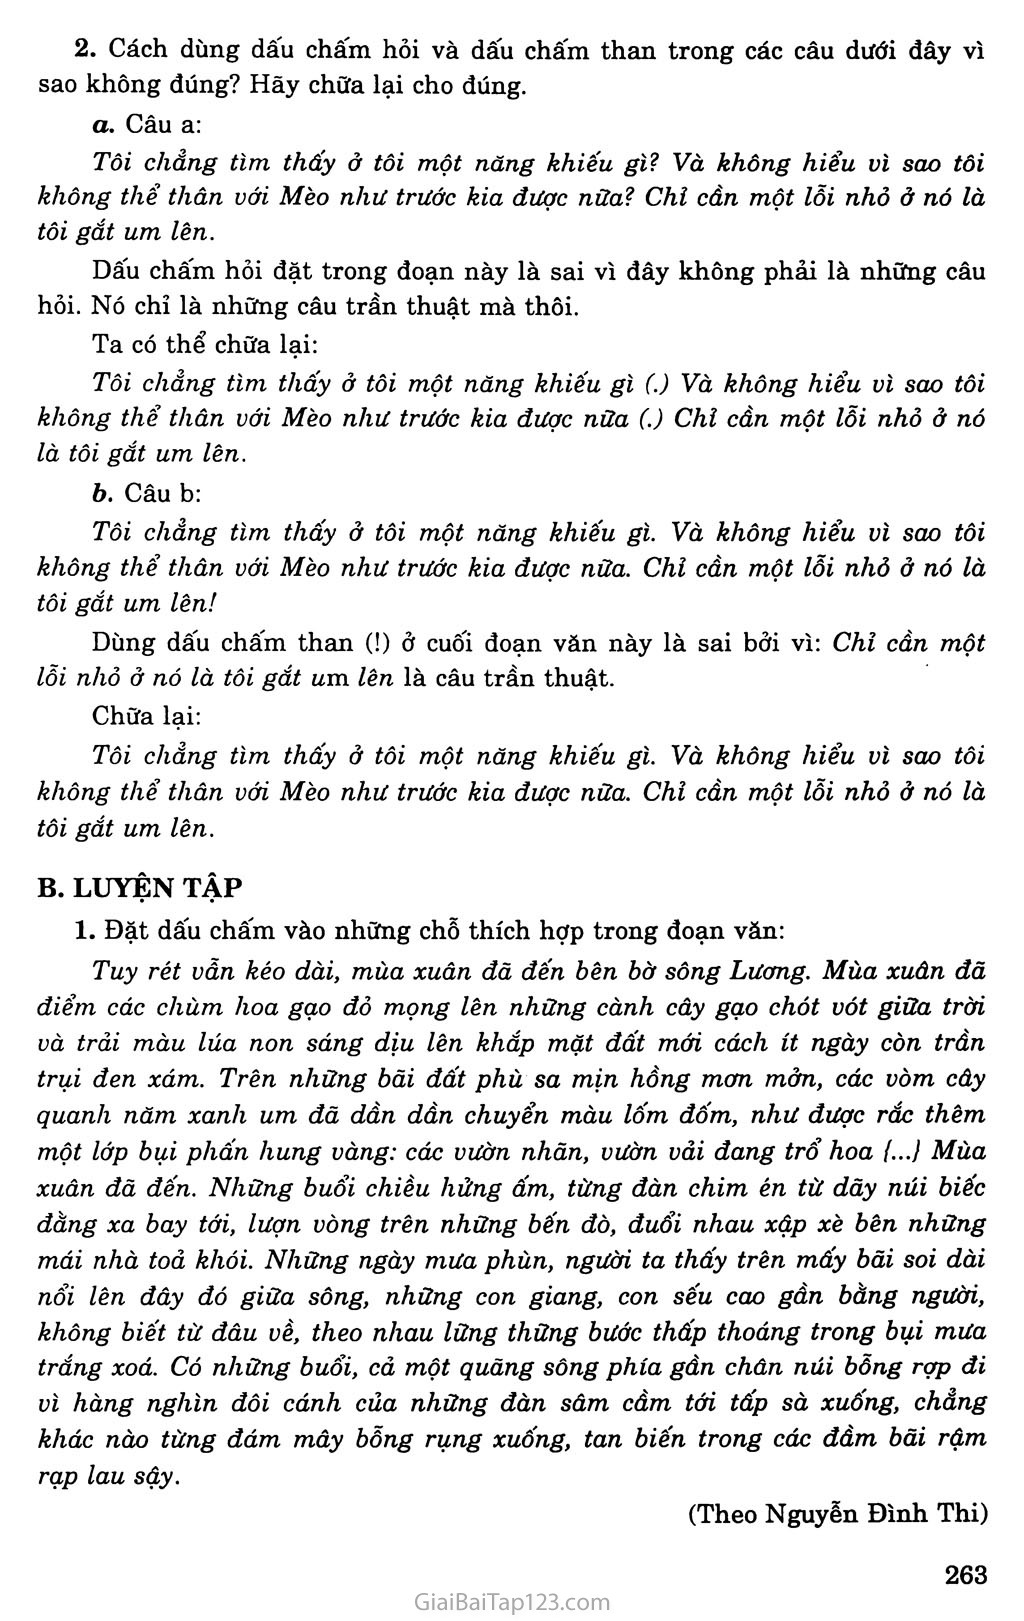 Ôn tập về dấu câu (Dấu chấm, dấu chấm hỏi, dấu chấm than) trang 4